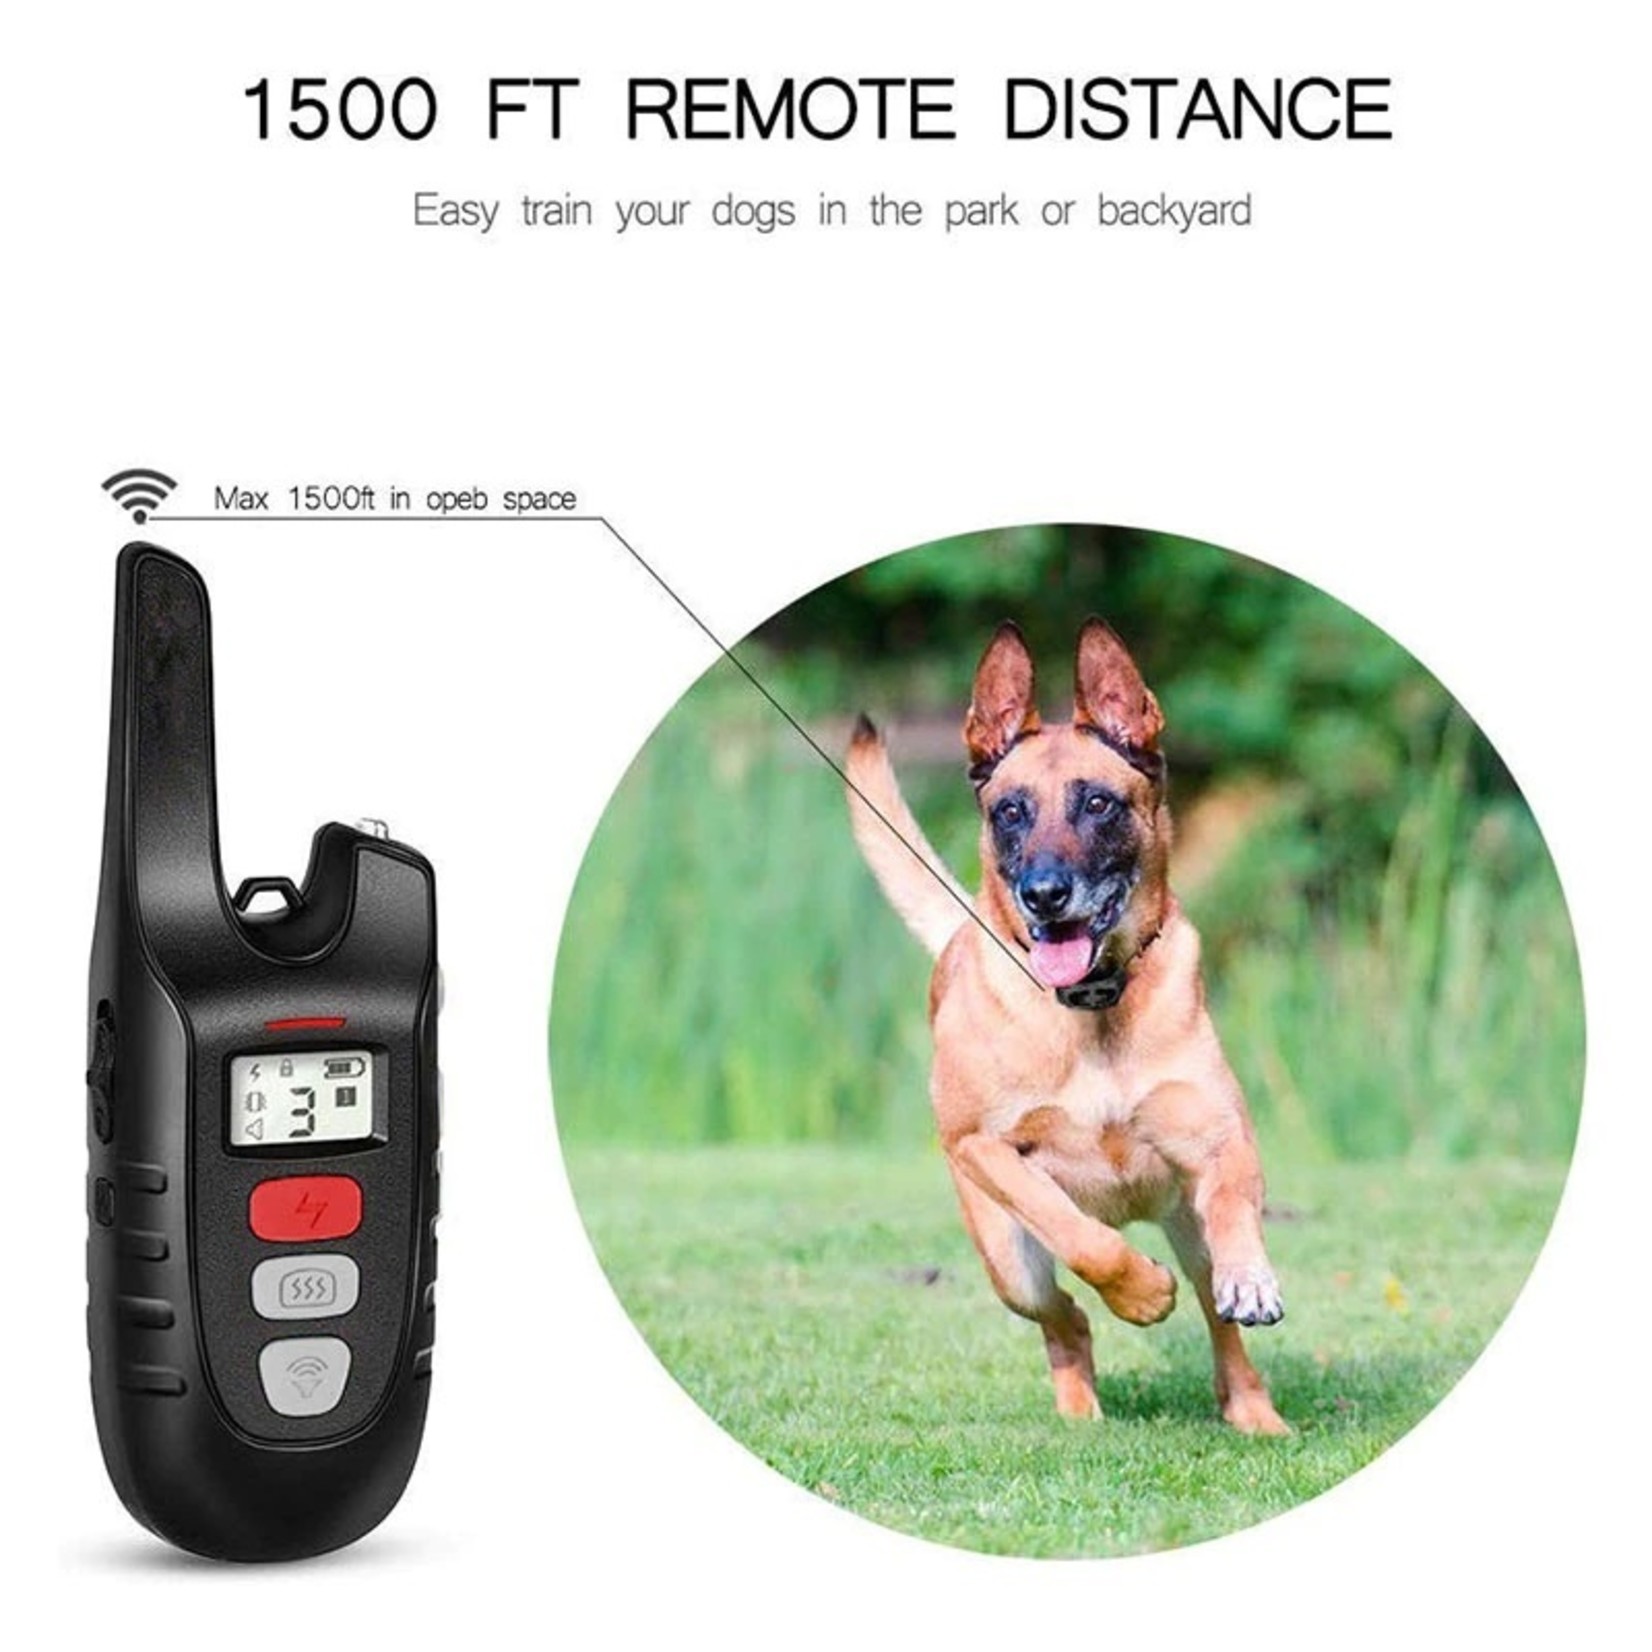 Elektrische hondentrainingshalsband met afstandsbediening voor honden Veilig Geen schokgeluid & trillende blafband Oplaadbaar en waterdicht